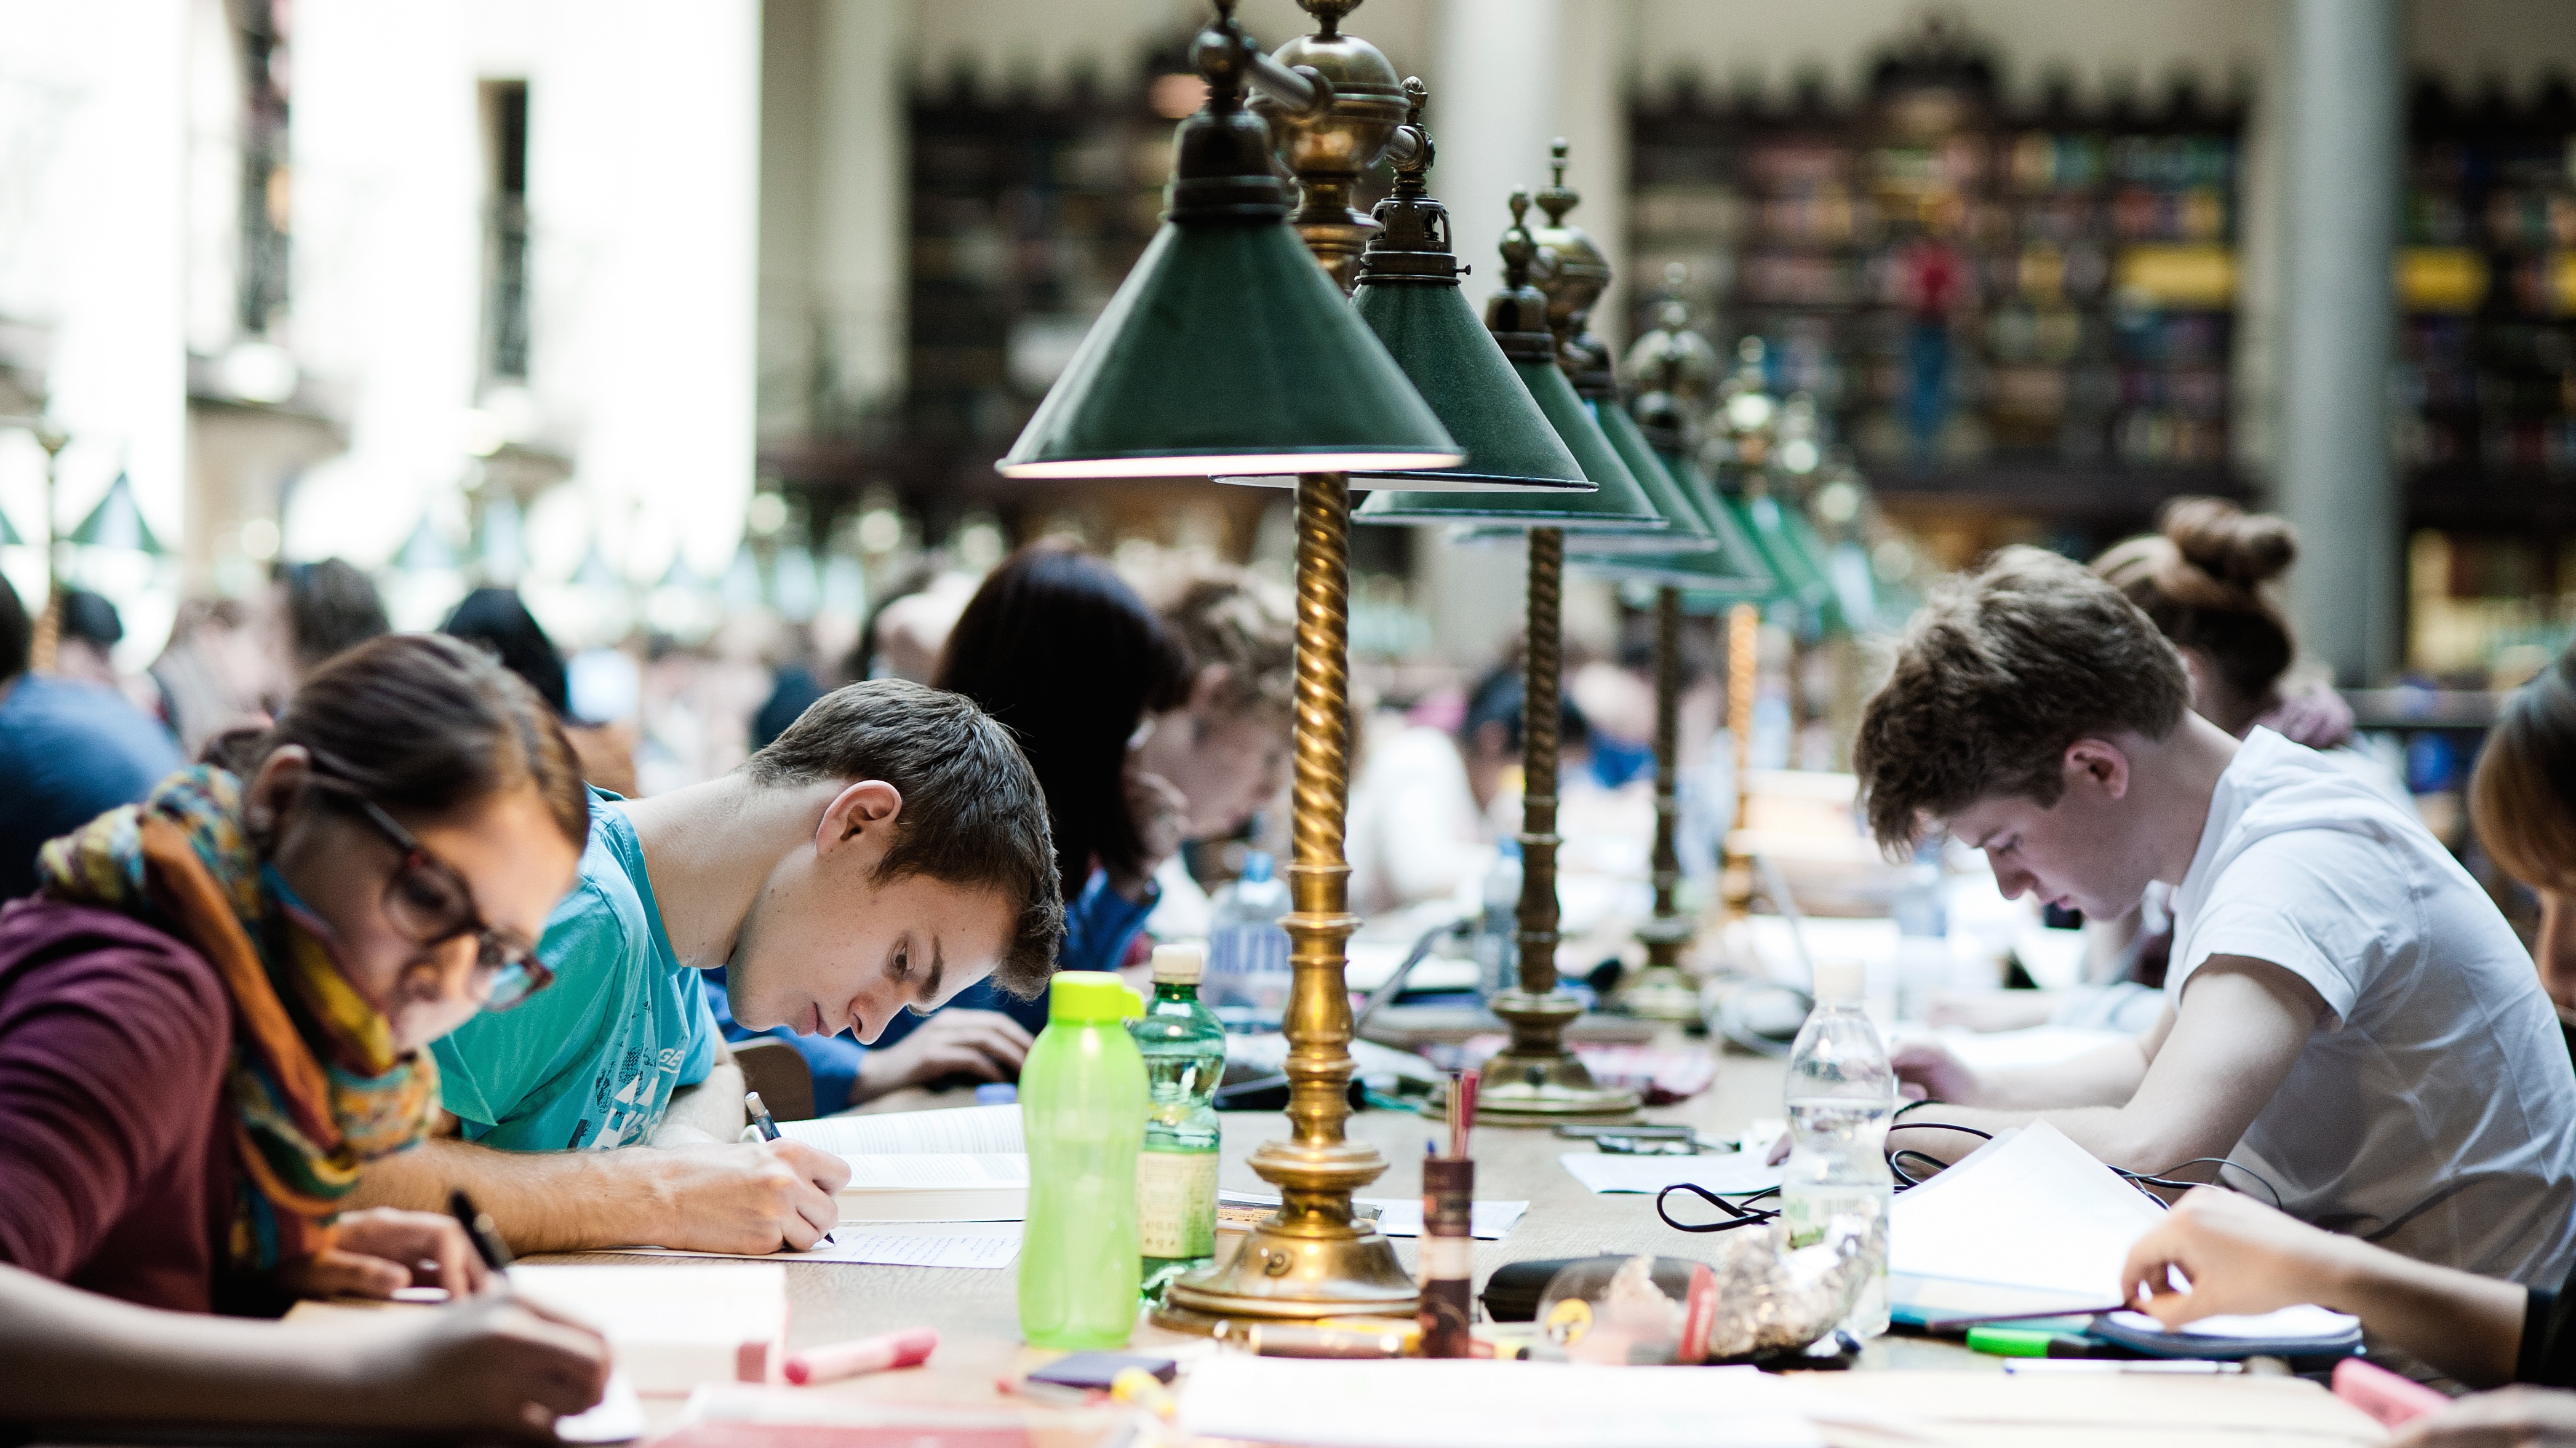 Studierende sitzen über ihre Lernmaterialien gebäugt im Hauptlesesaal der Uni Wien